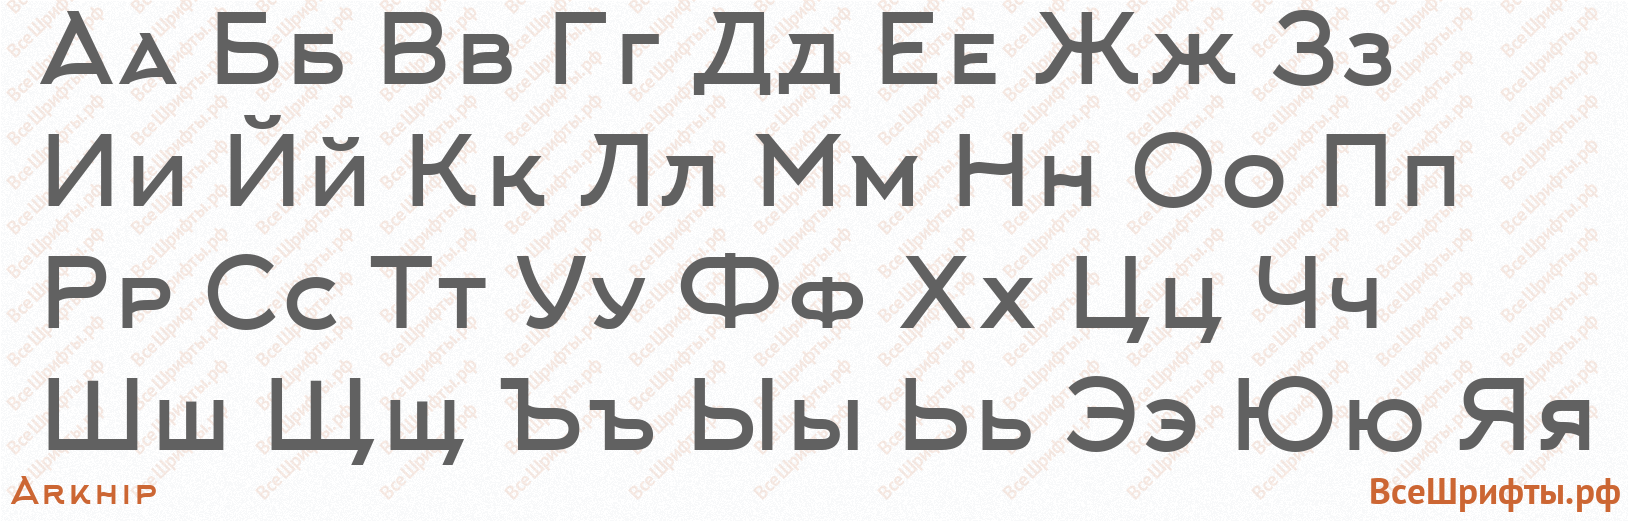 Шрифт Arkhip с русскими буквами